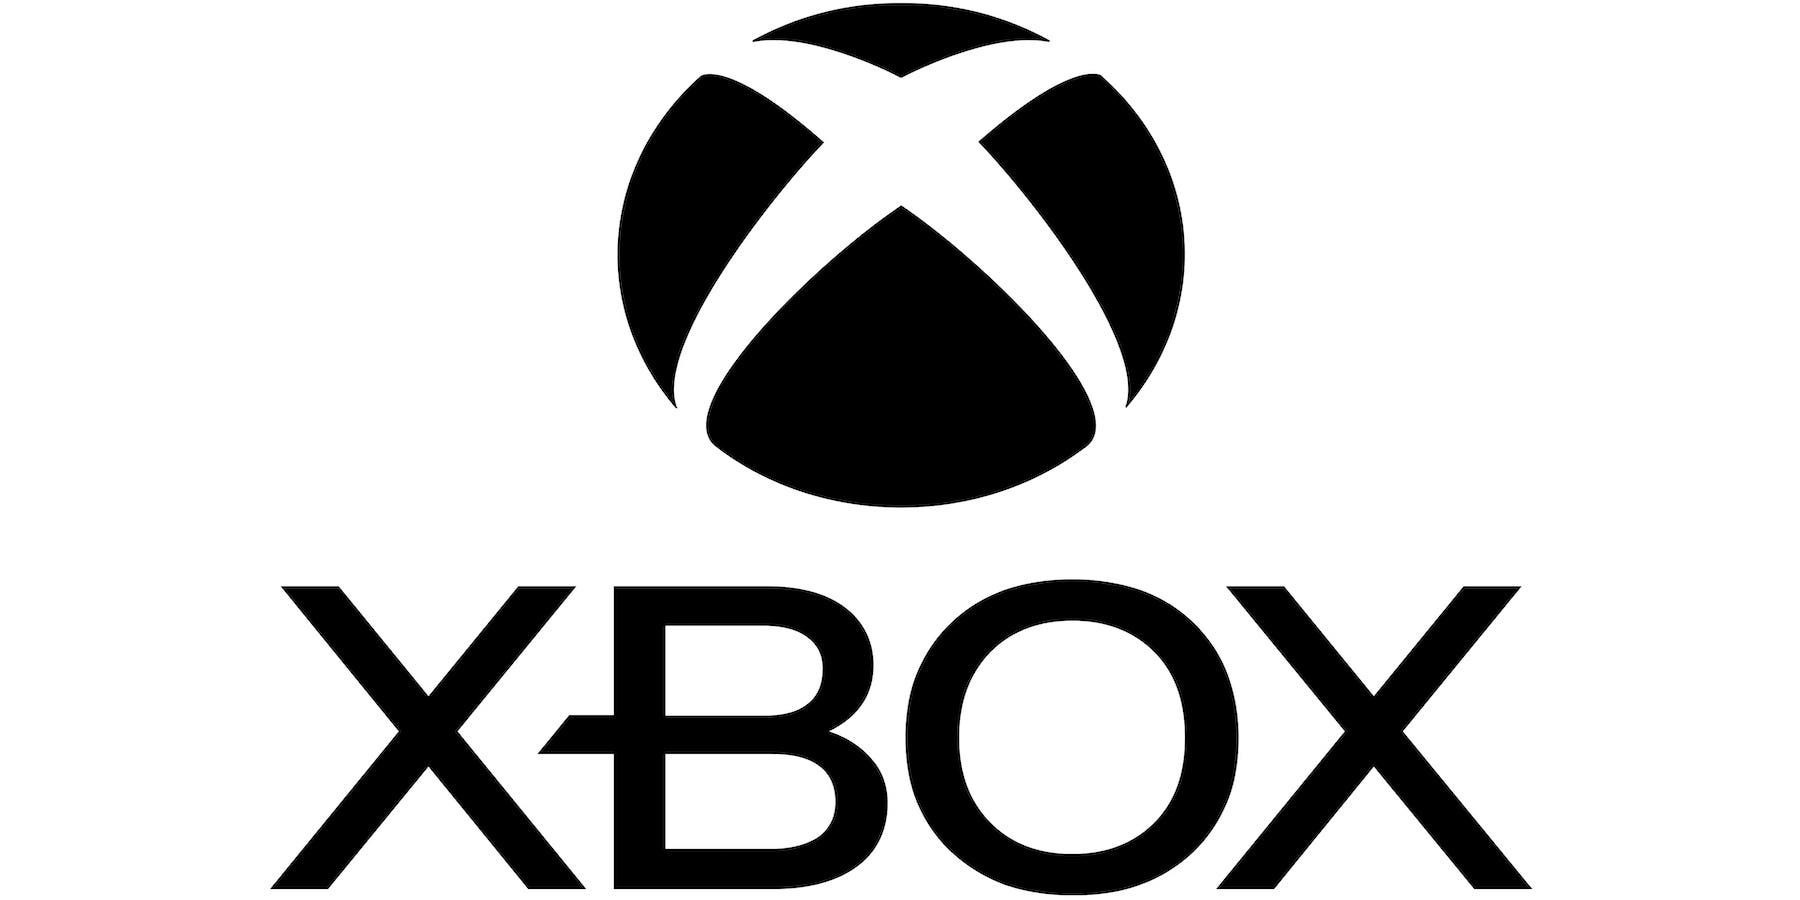 Xboxlogoblackonwhite